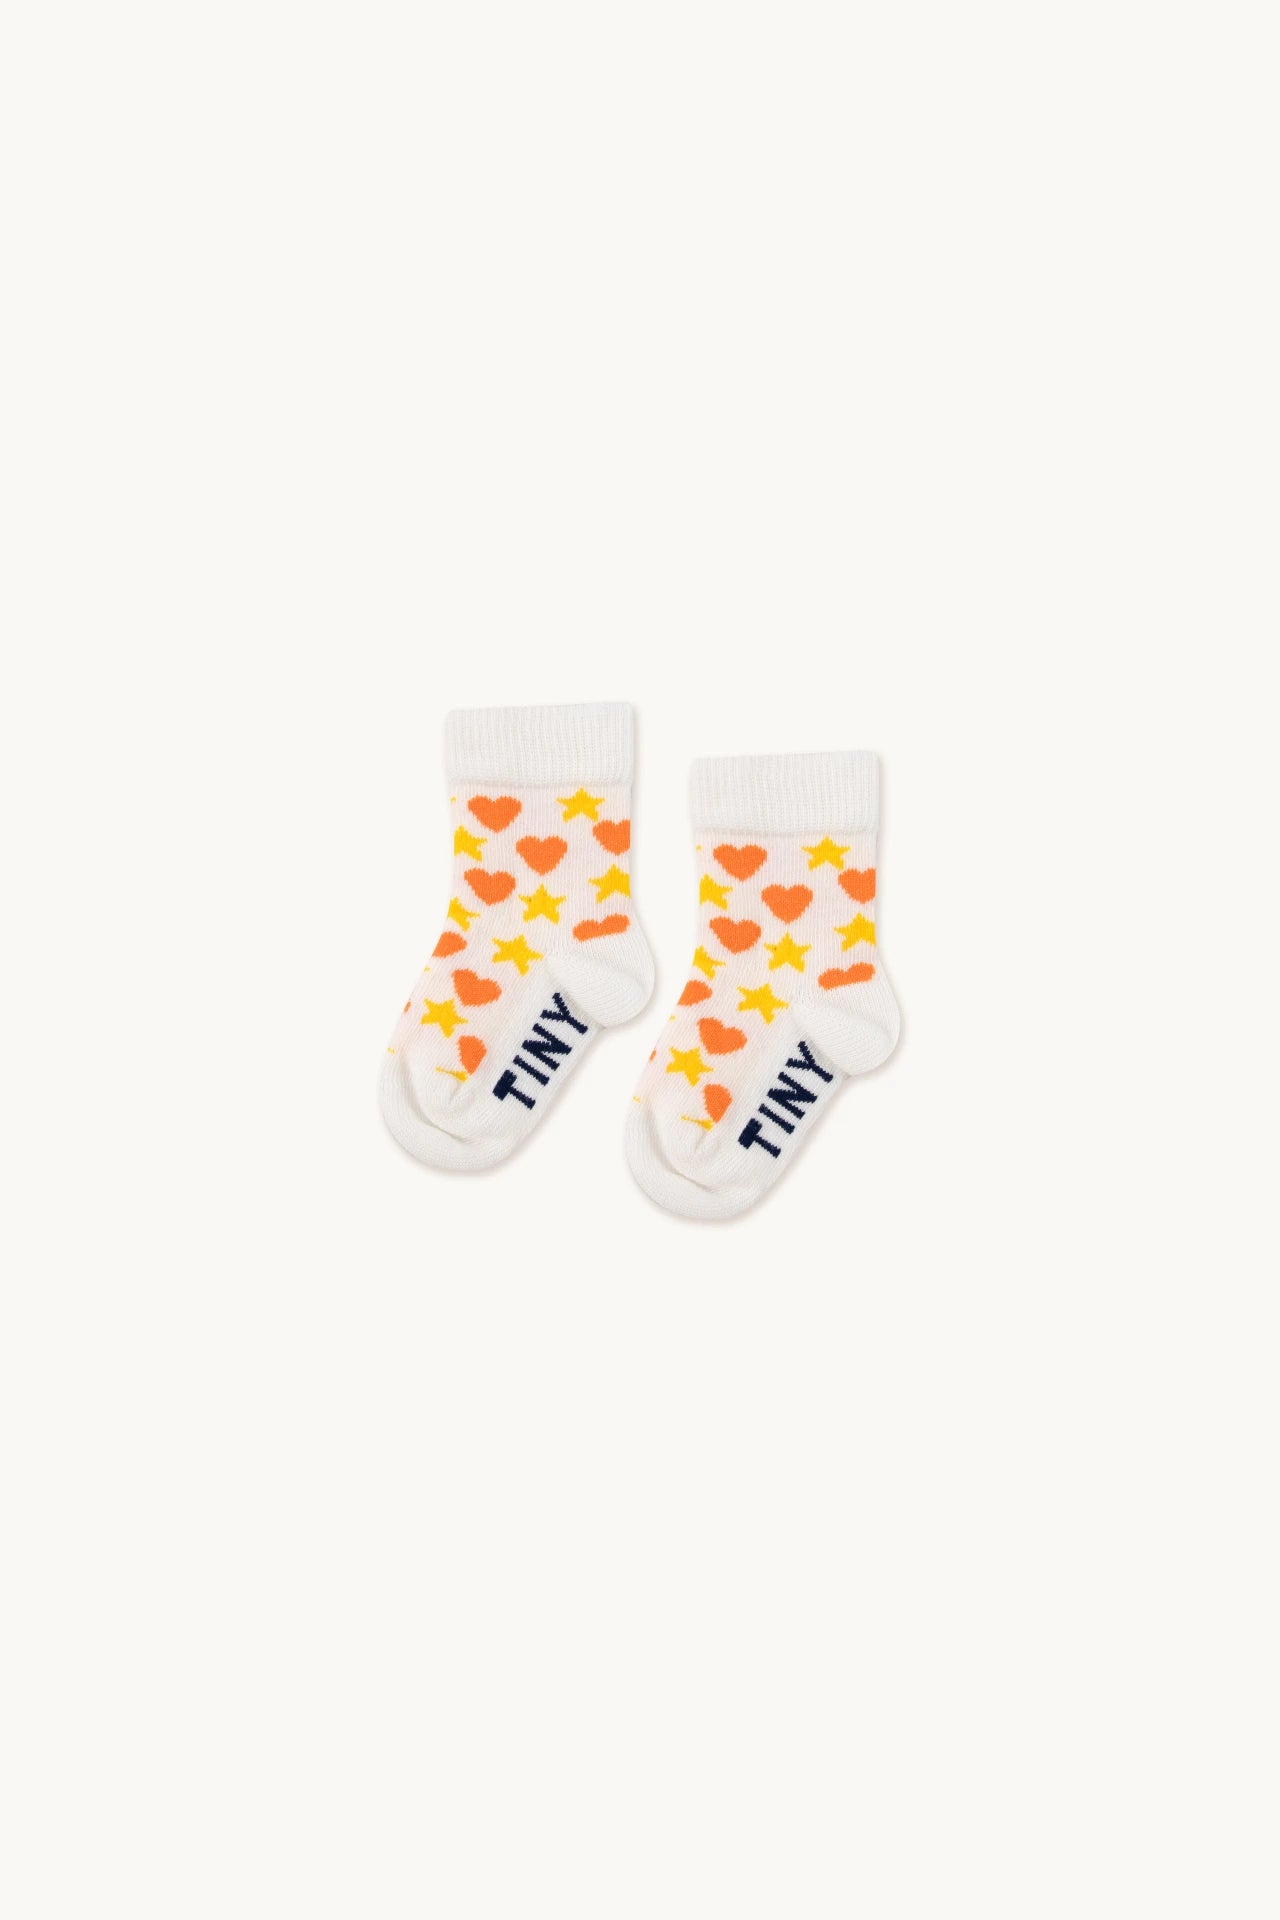 Tiny Cottons - Hearts and Stars Socks